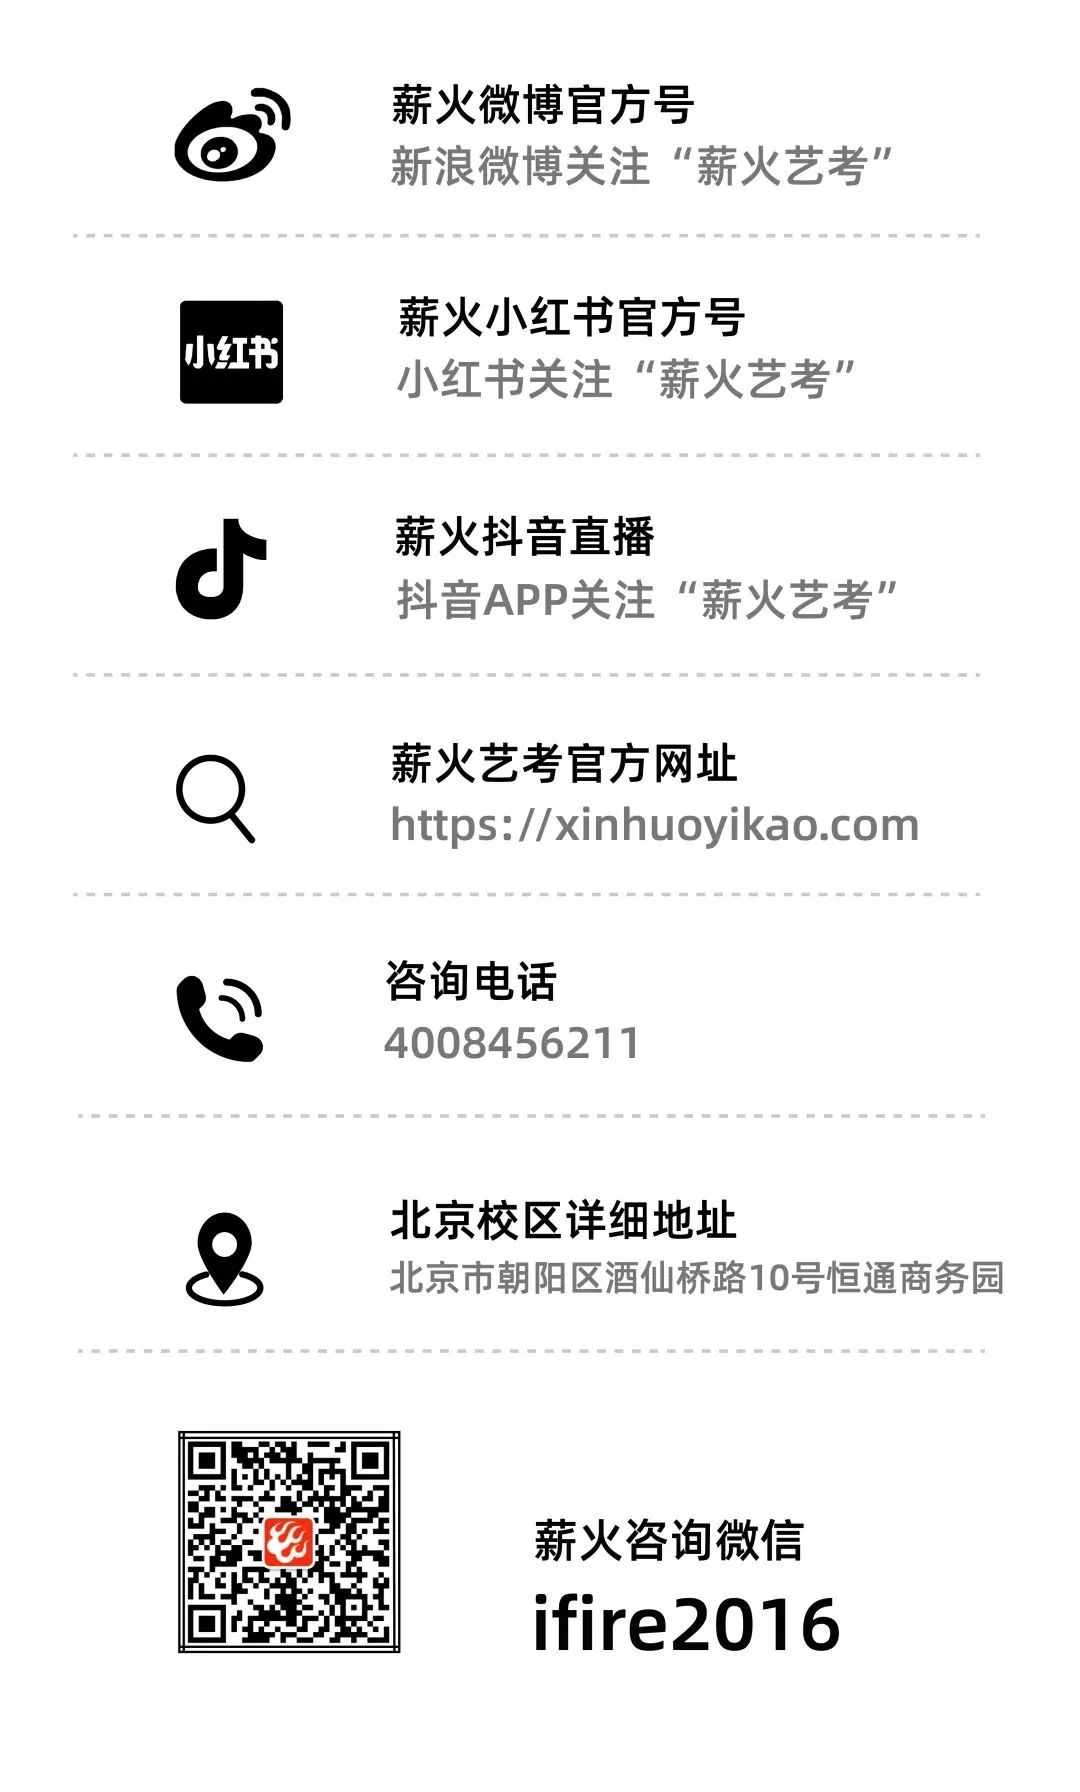 1681192437-xinhuoyikao.com